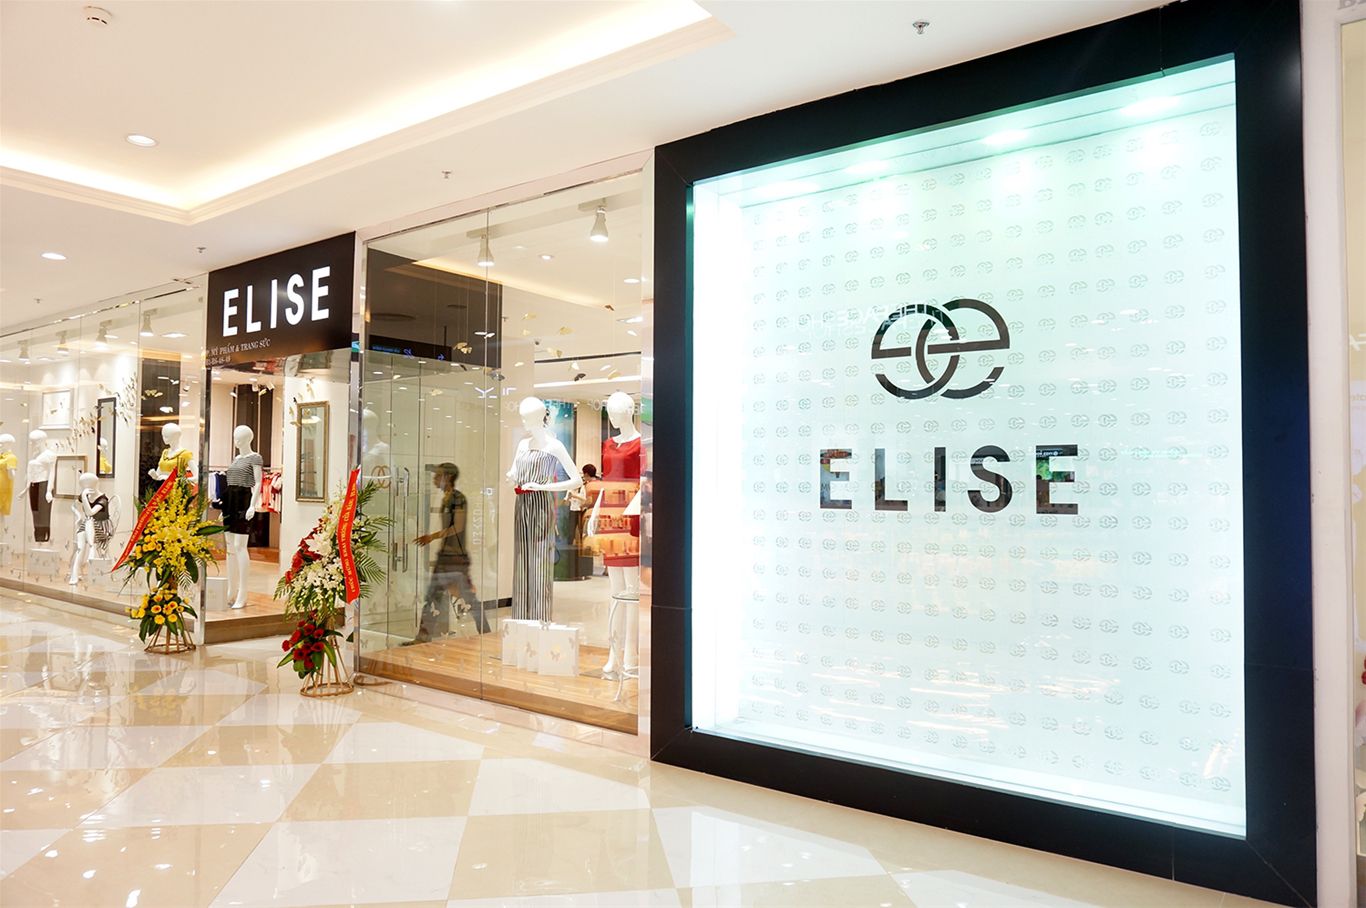 Elise có chuỗi cửa hàng quy mô rộng khắp cả nước, mục tiêu năm 2020 sẽ có mặt tại các thị trường nước ngoài